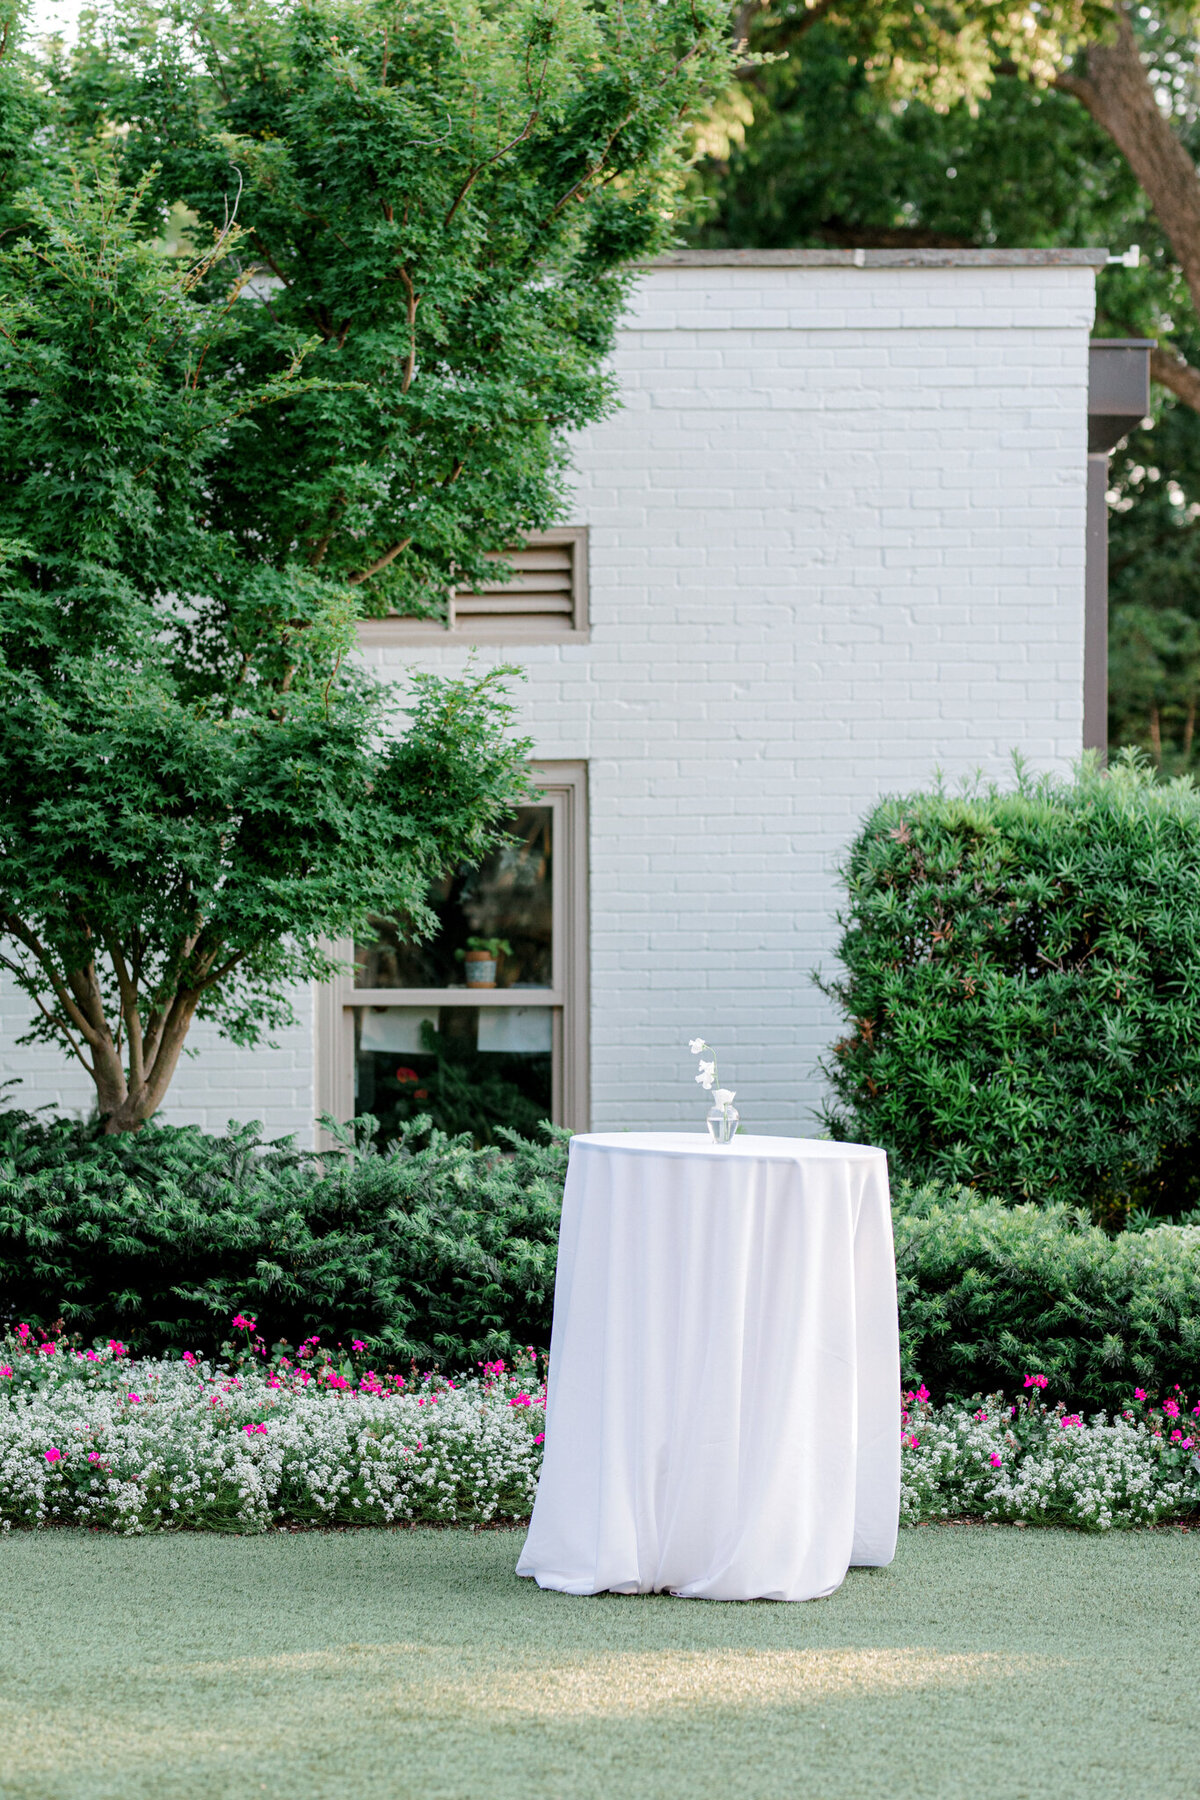 Gena & Matt's Wedding at the Dallas Arboretum | Dallas Wedding Photographer | Sami Kathryn Photography-227